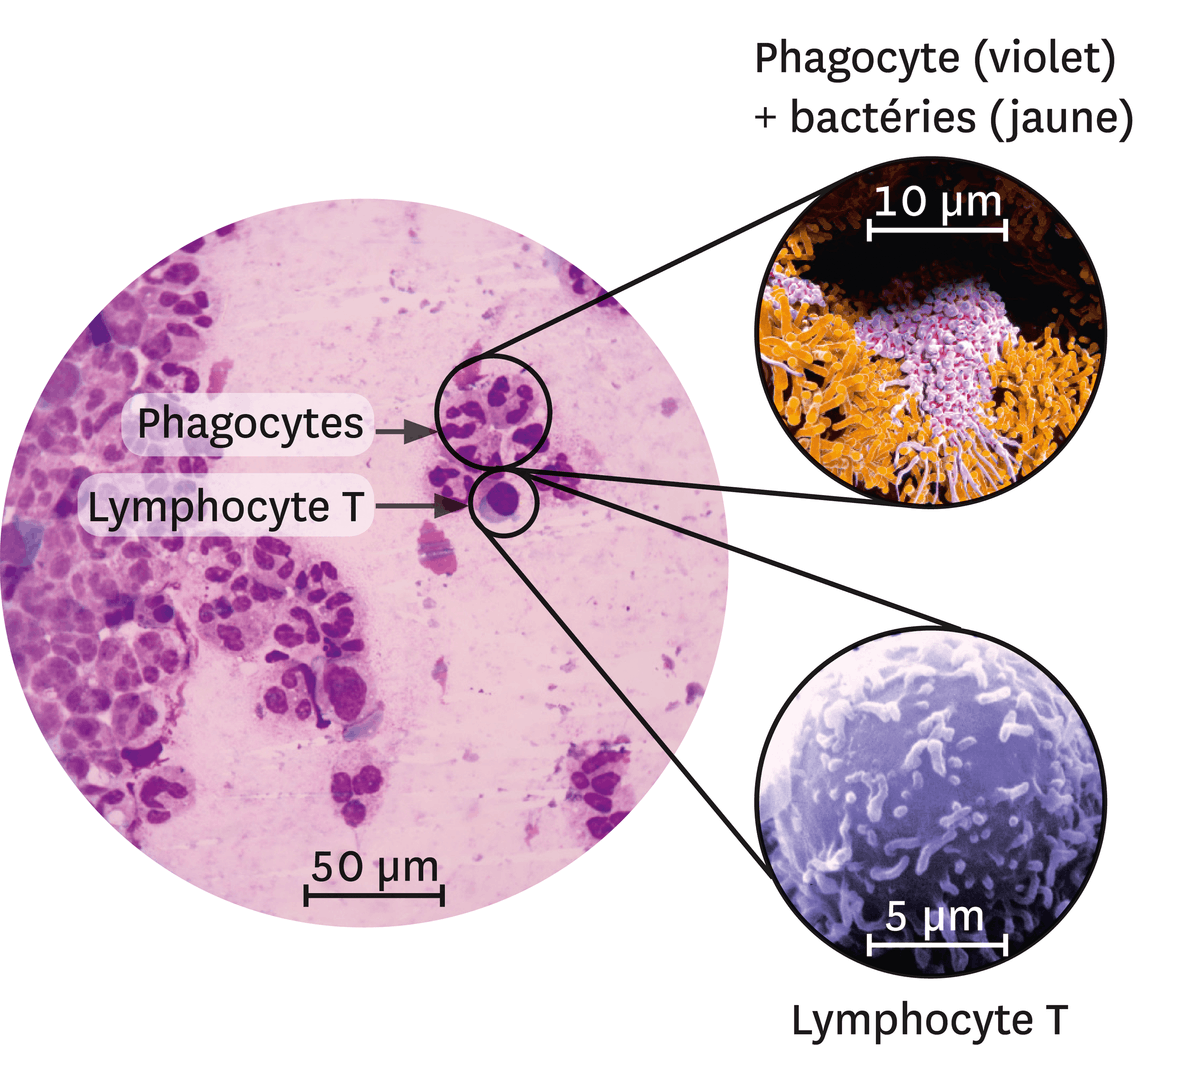 Différents types de leucocytes sur le site d'une infection. On fait un zoom sur le phagocyte (en violet) + des bactéries (en jaune) et les lymphocyte T